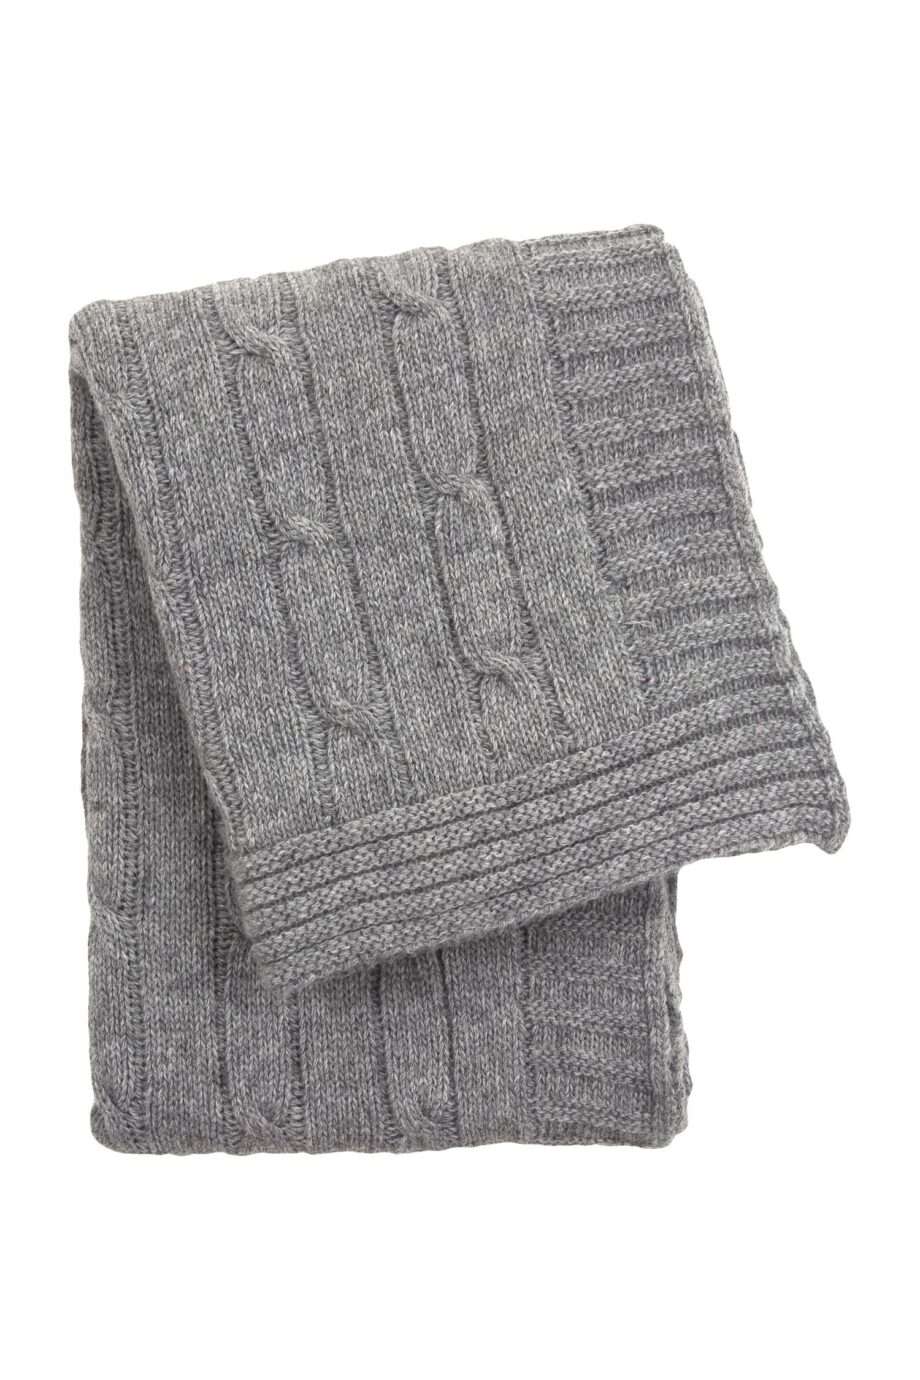 twist light grey knitted woolen little blanket small